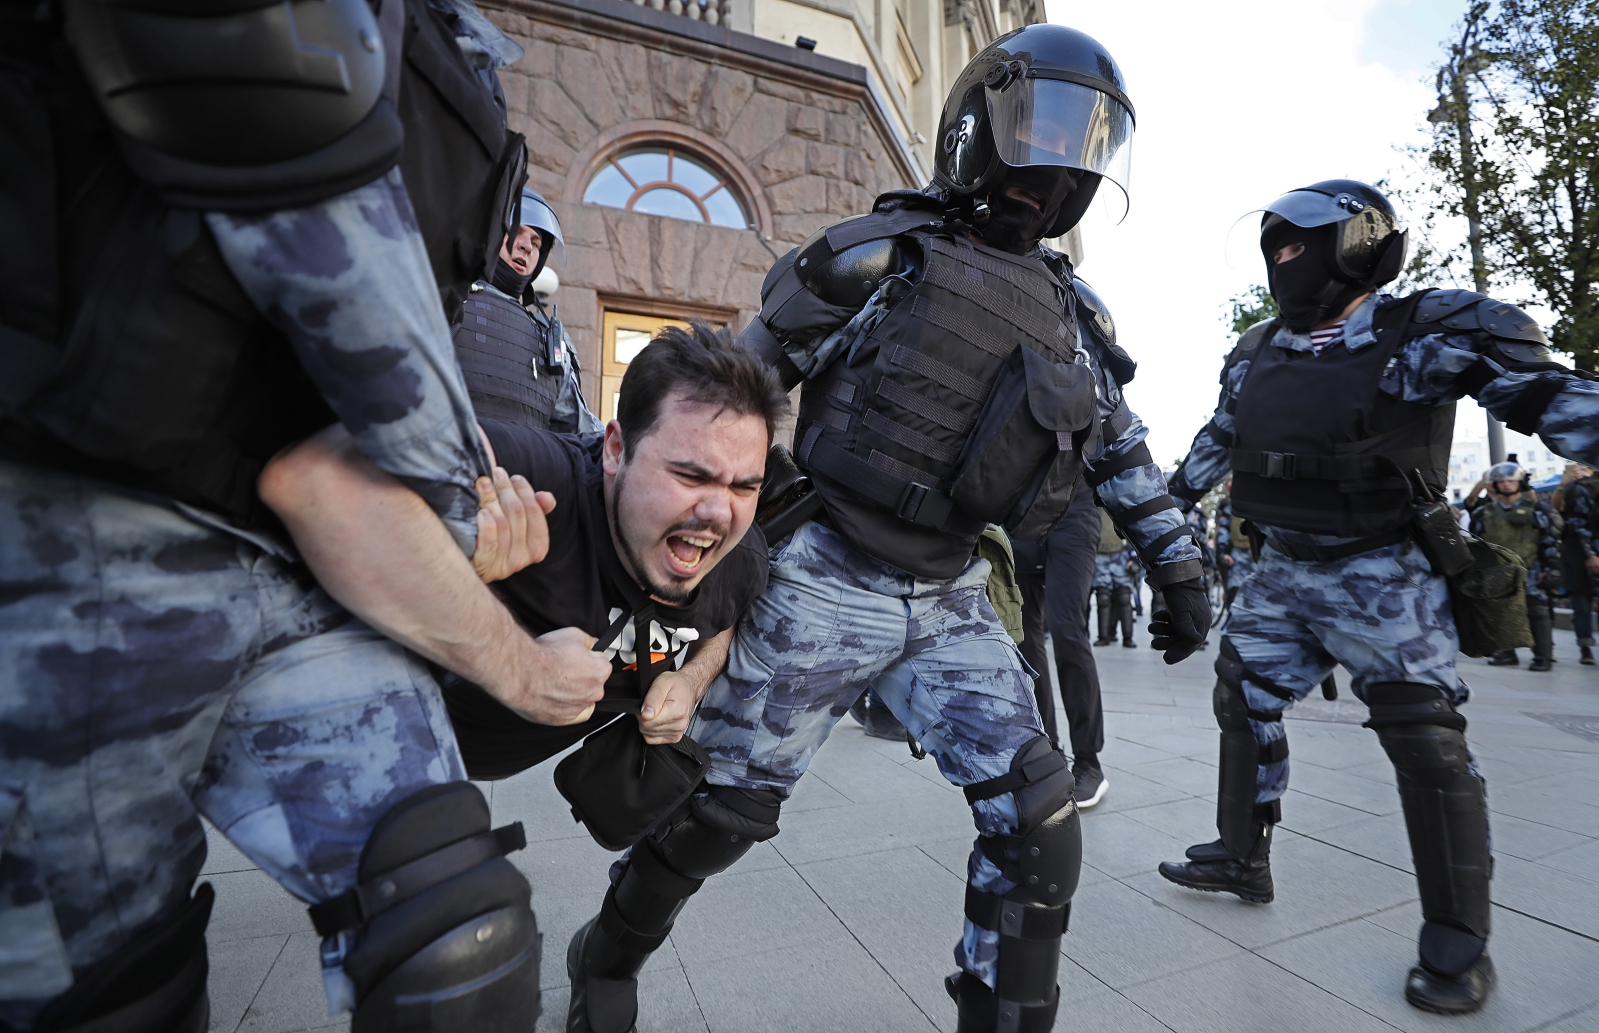 <p>Руската полиция е арестувала 1373 души, излезли&nbsp;в събота&nbsp;на демонстрация в Москва с искане за свободни избори. Това са данни на неправителствената организация &quot;ОВД-Инфо&quot;, според която това е най-големият брой арести от протестното движение през 2012 г. срещу завръщането в Кремъл на Владимир Путин, предаде Франс прес.</p>